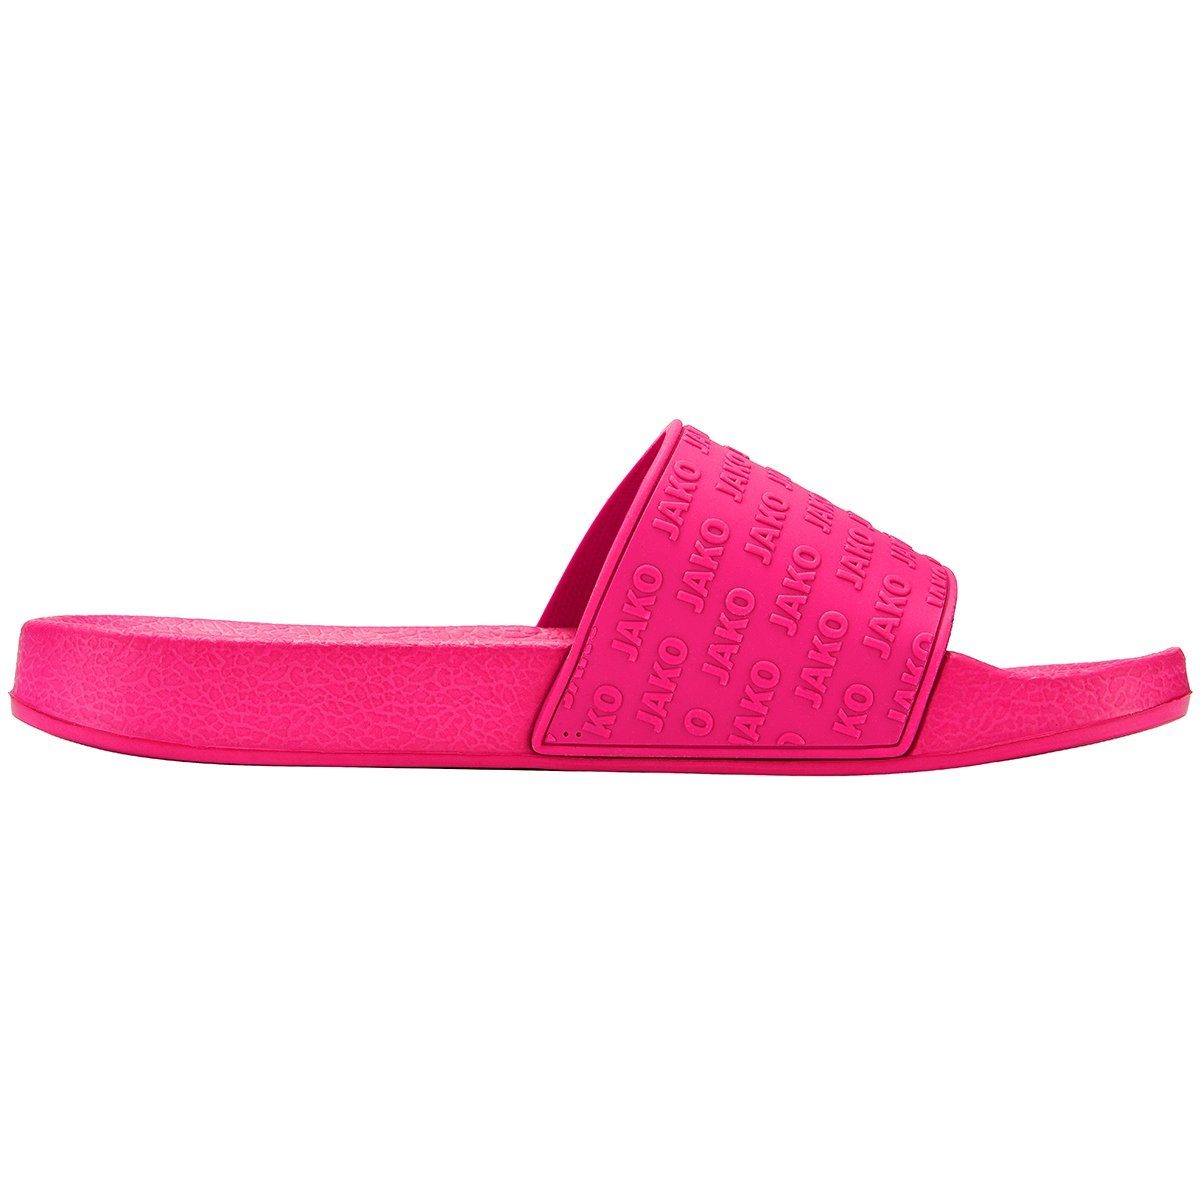 Sandalette Jako pink